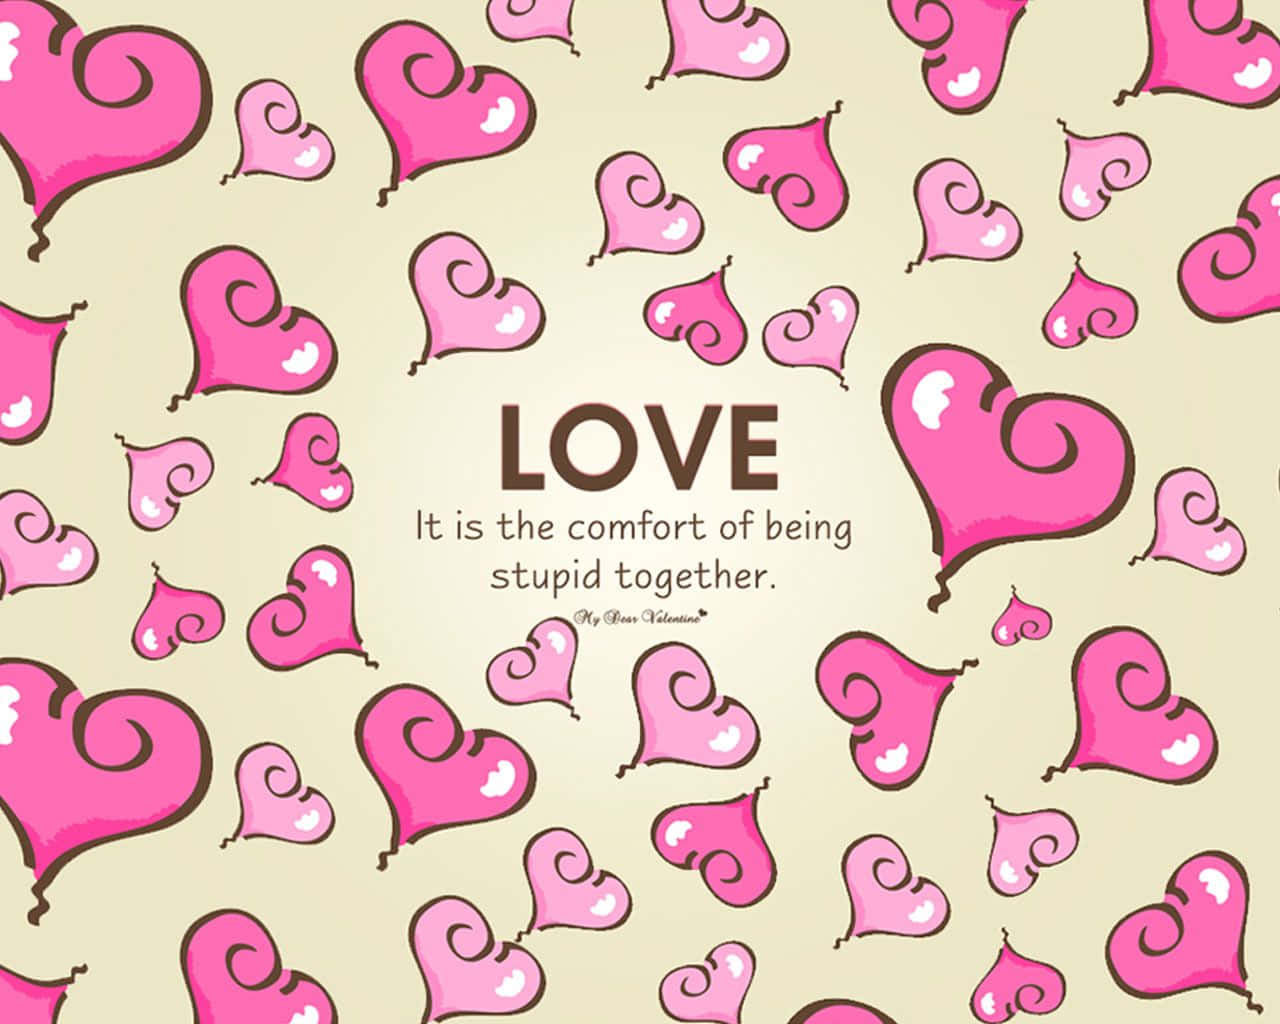 Tarjetade San Valentín Con Corazones Rosados Y Las Palabras El Amor Es La Comodidad De Estar Juntos. Fondo de pantalla